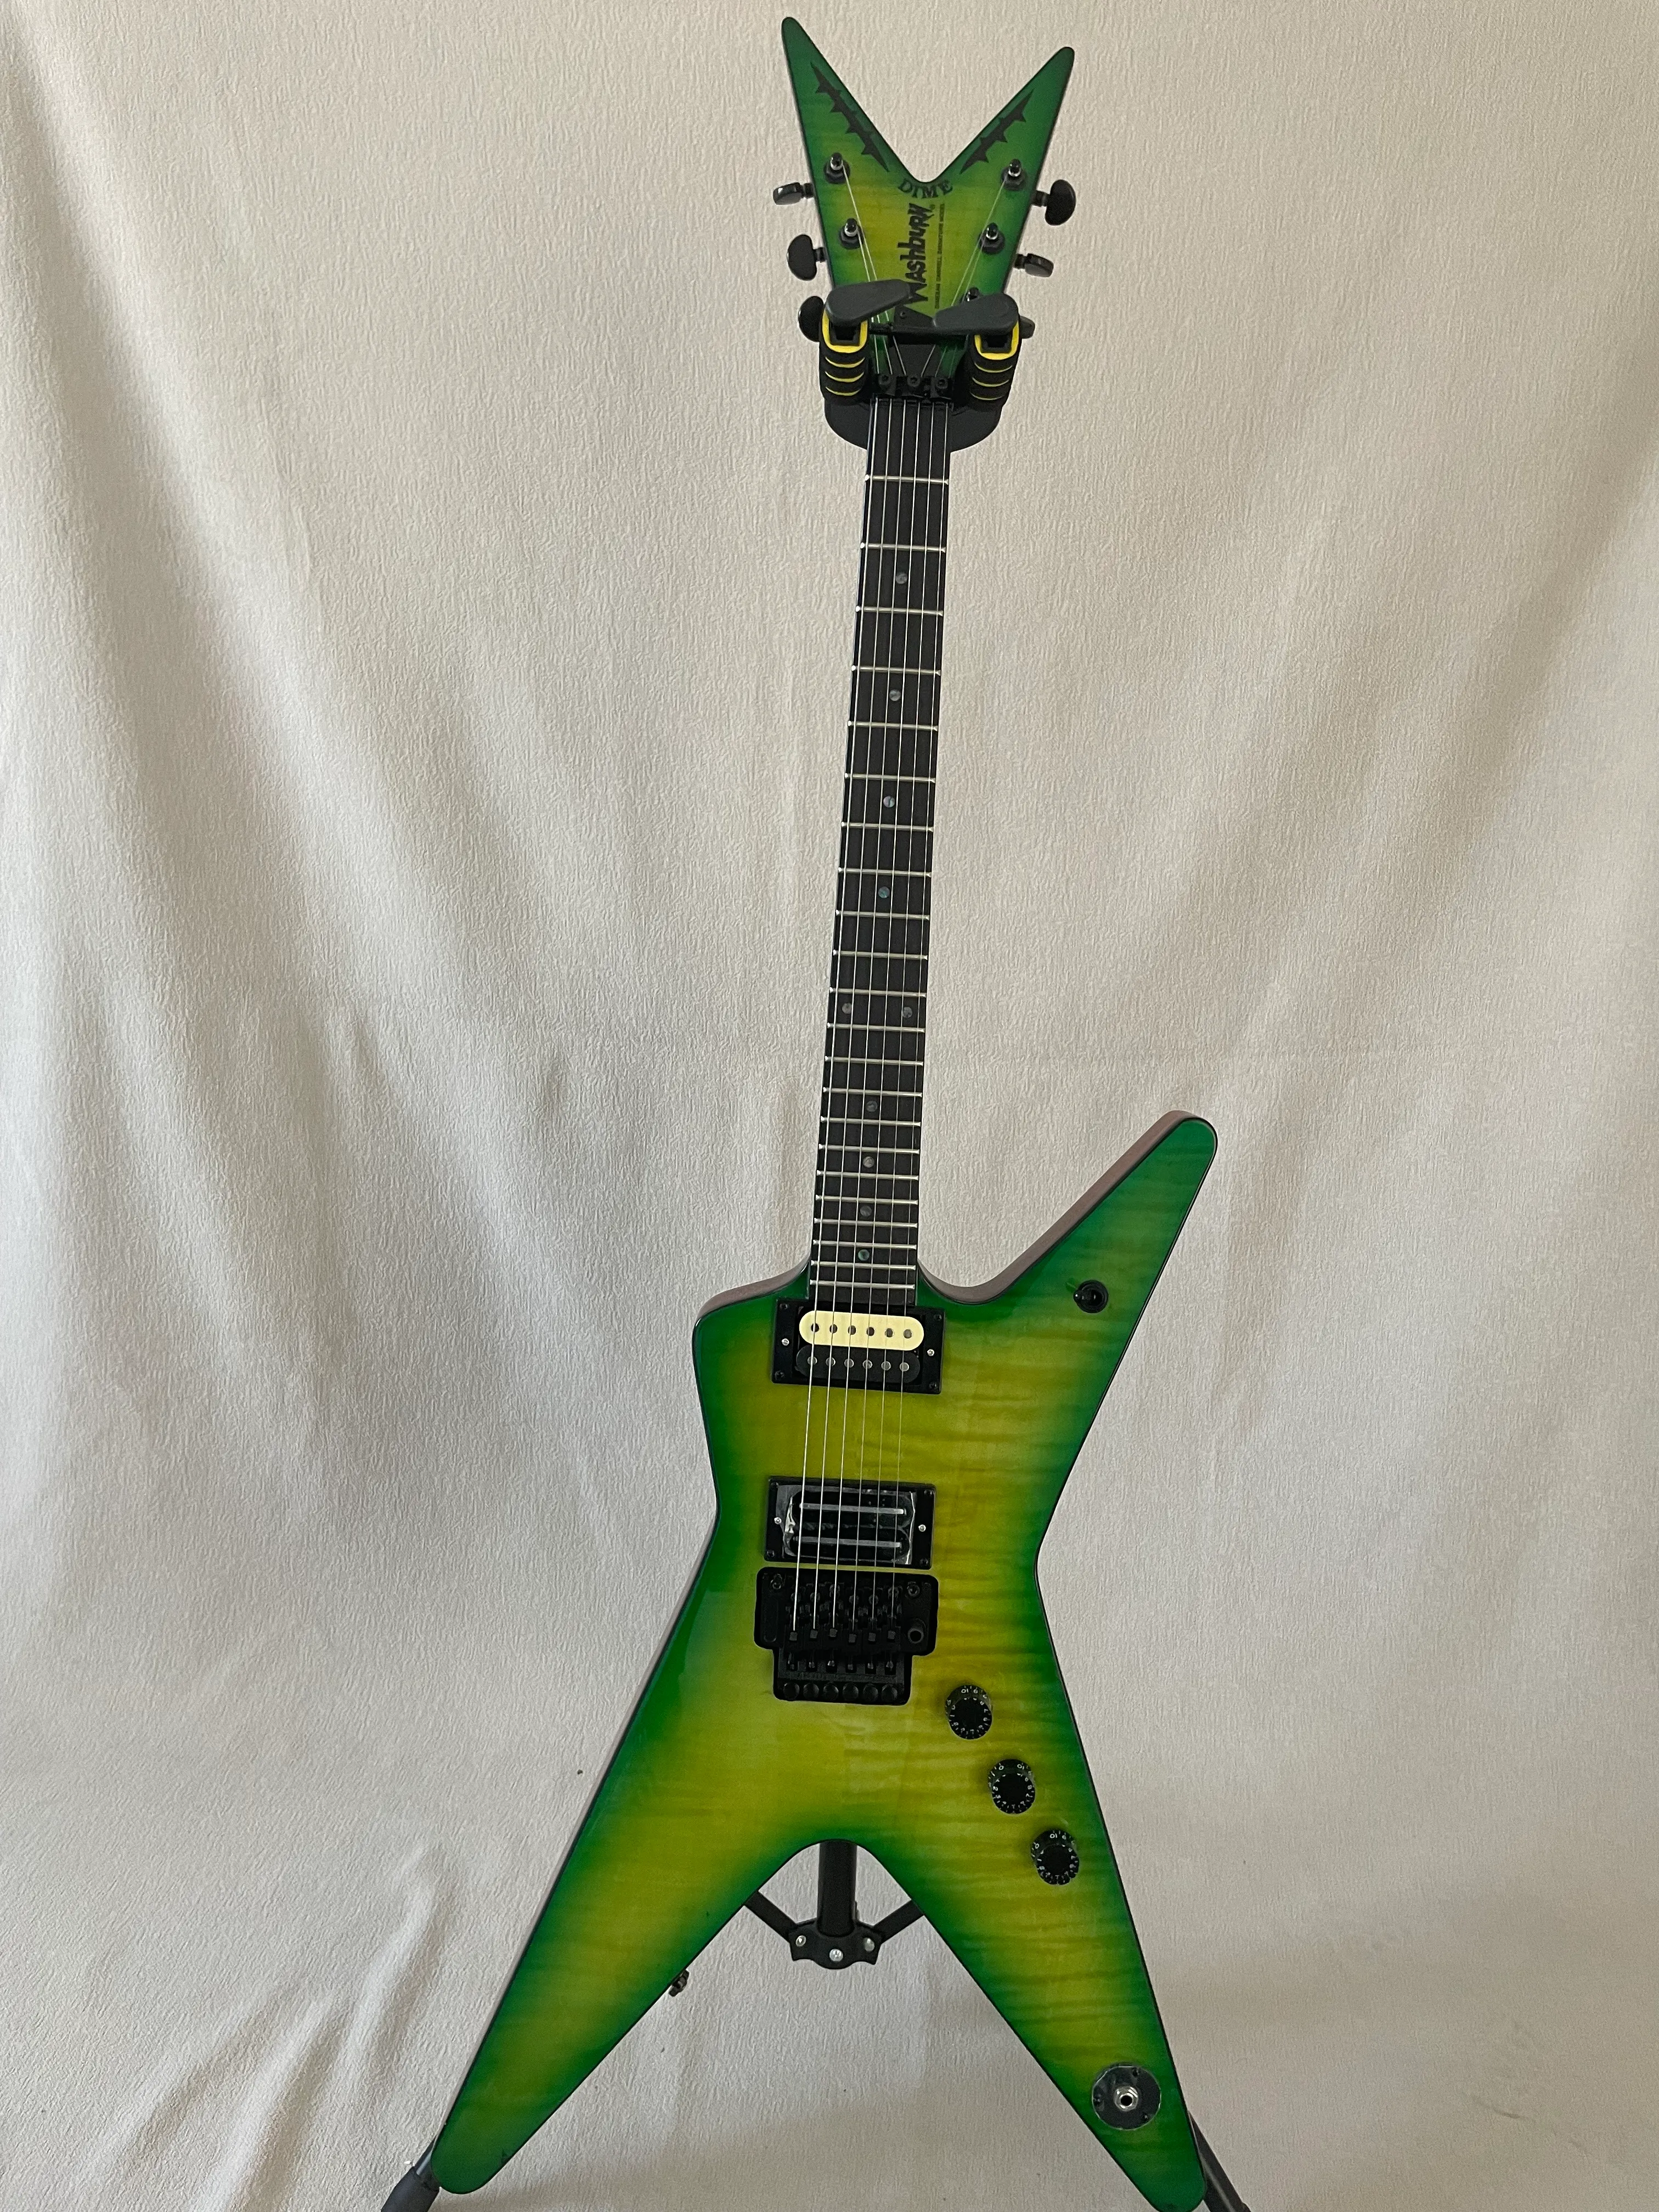 Пользовательская высококлассная модель Dimebag Signature Electric Guitar Green